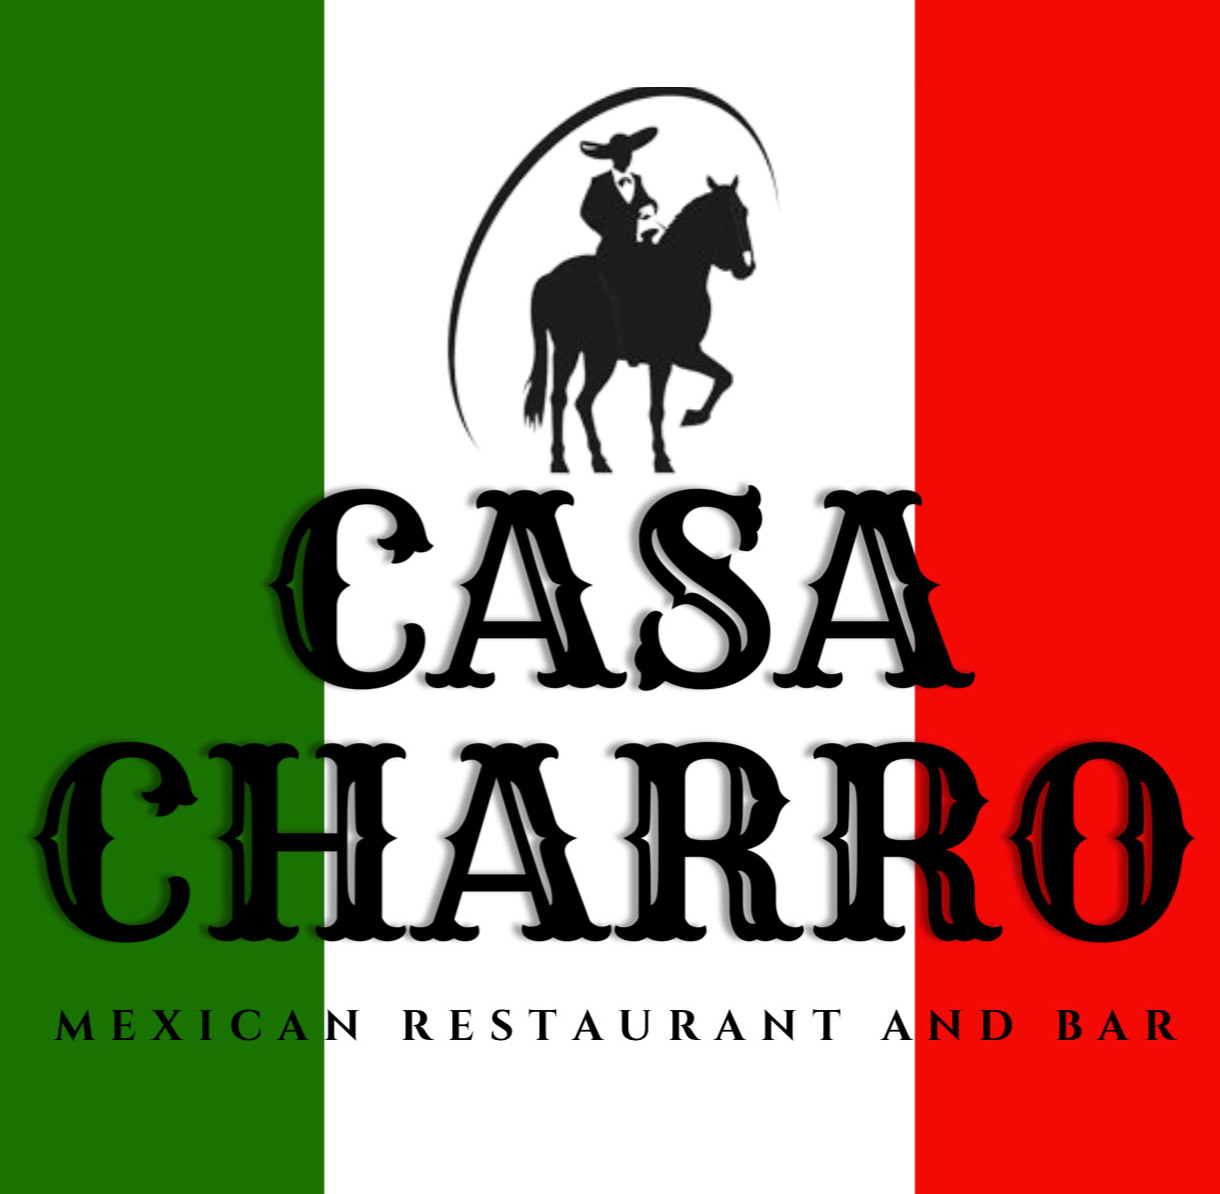  Casa Charro logo